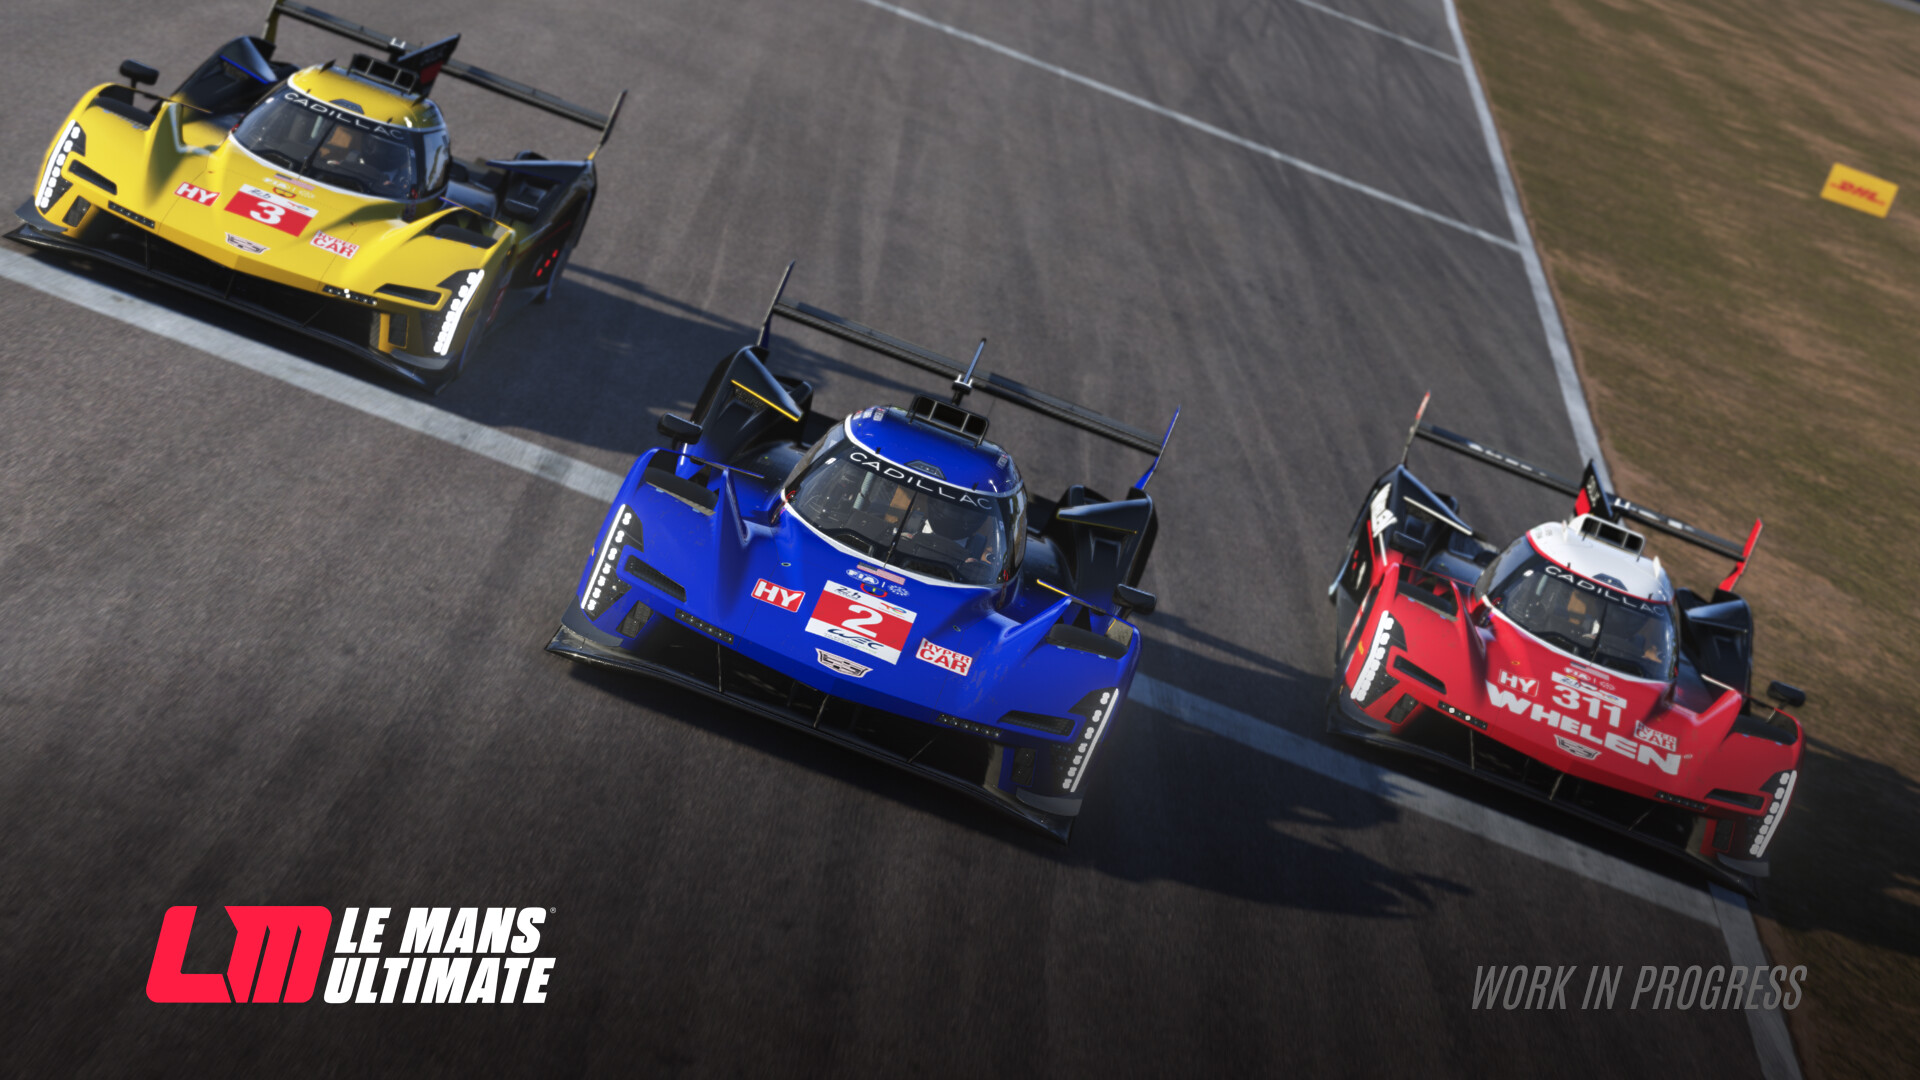 勒芒终极赛|官方英文|Le Mans Ultimate插图4